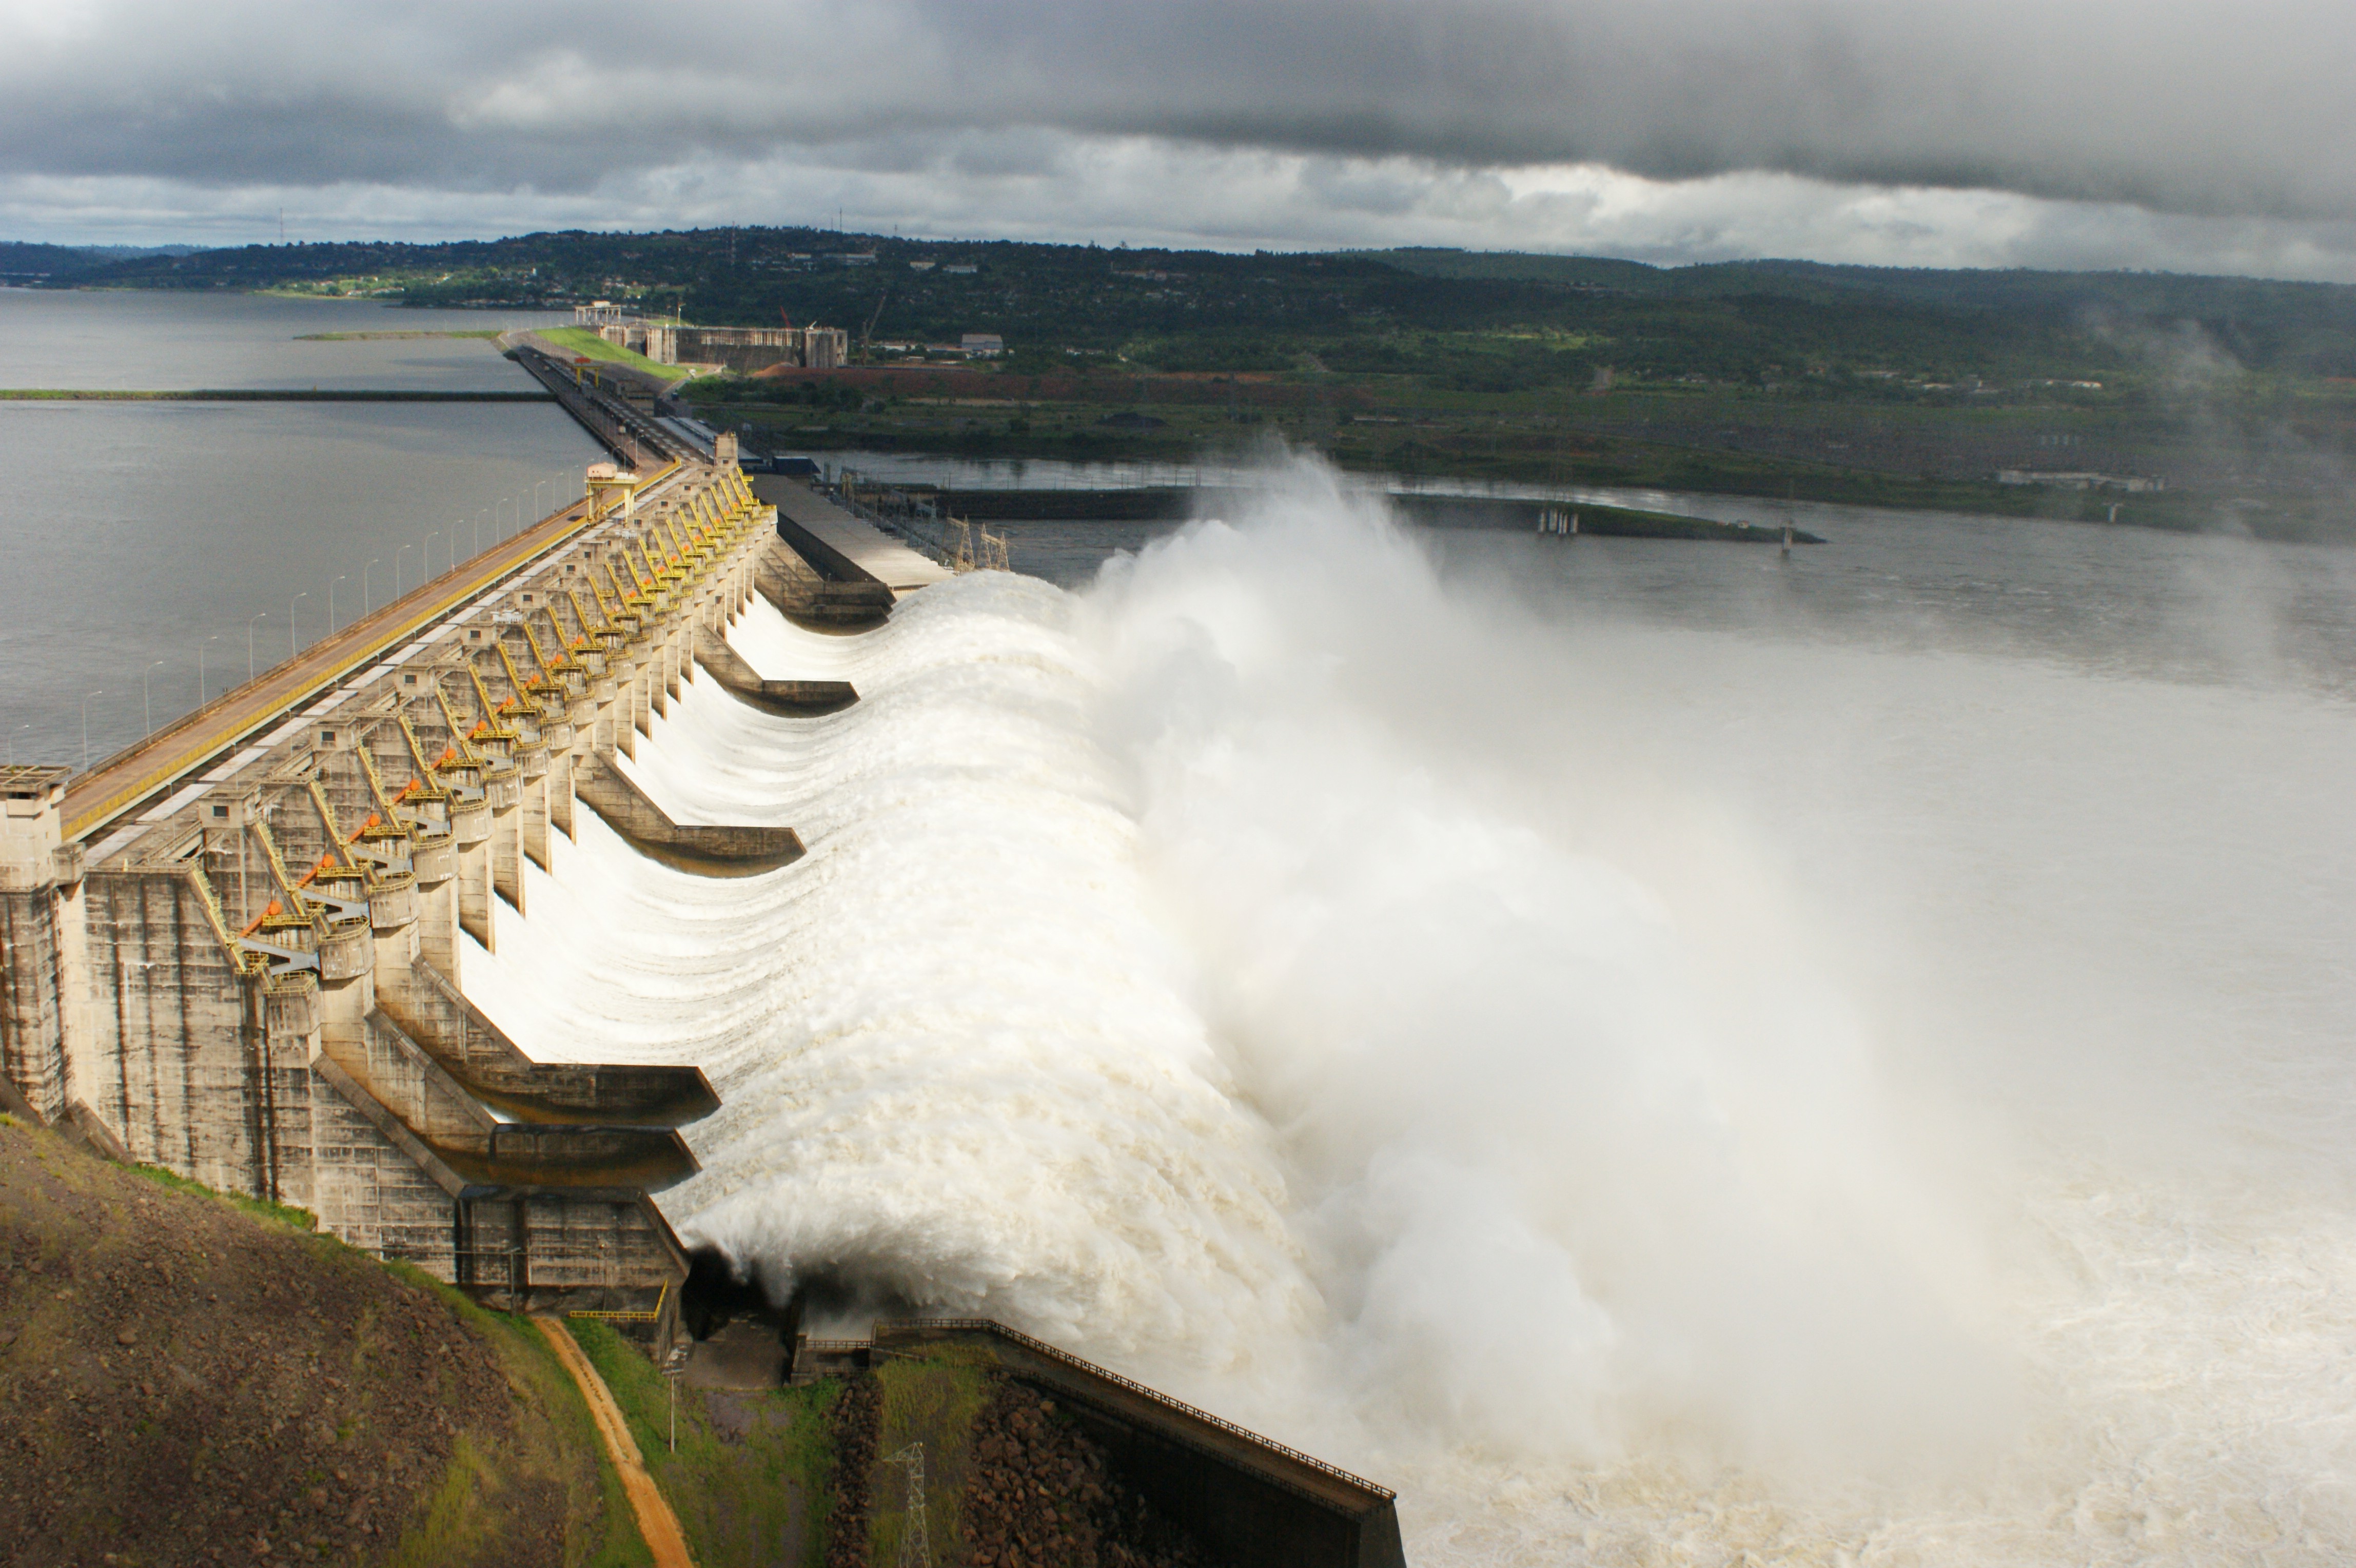 Какие гэс в россии самые крупные. Тукуруи ГЭС. Тукуруи Бразилия. Саяно-Шушенская ГЭС. Гидроэлектрические станции (ГЭС).